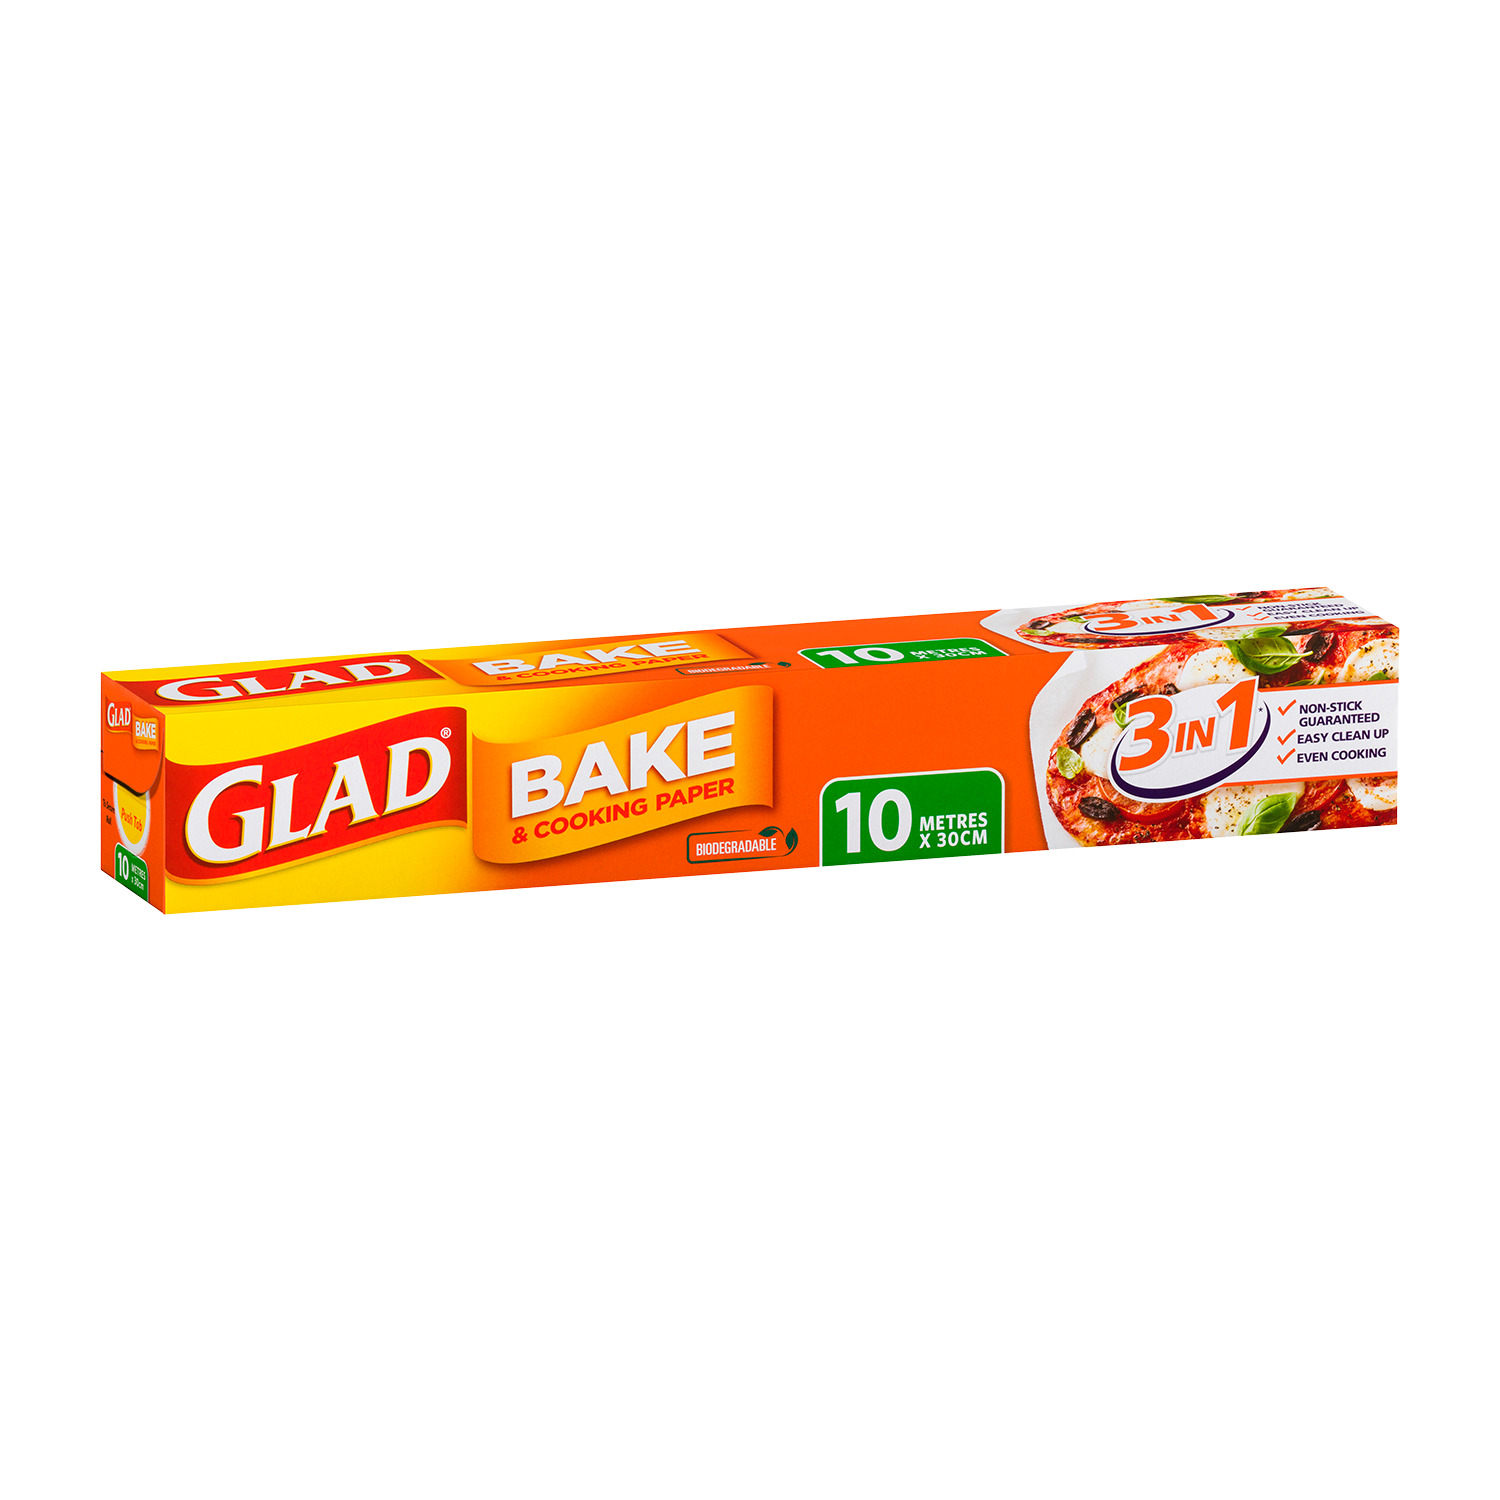 GLAD Bake Cook Paper 30CM x 10M